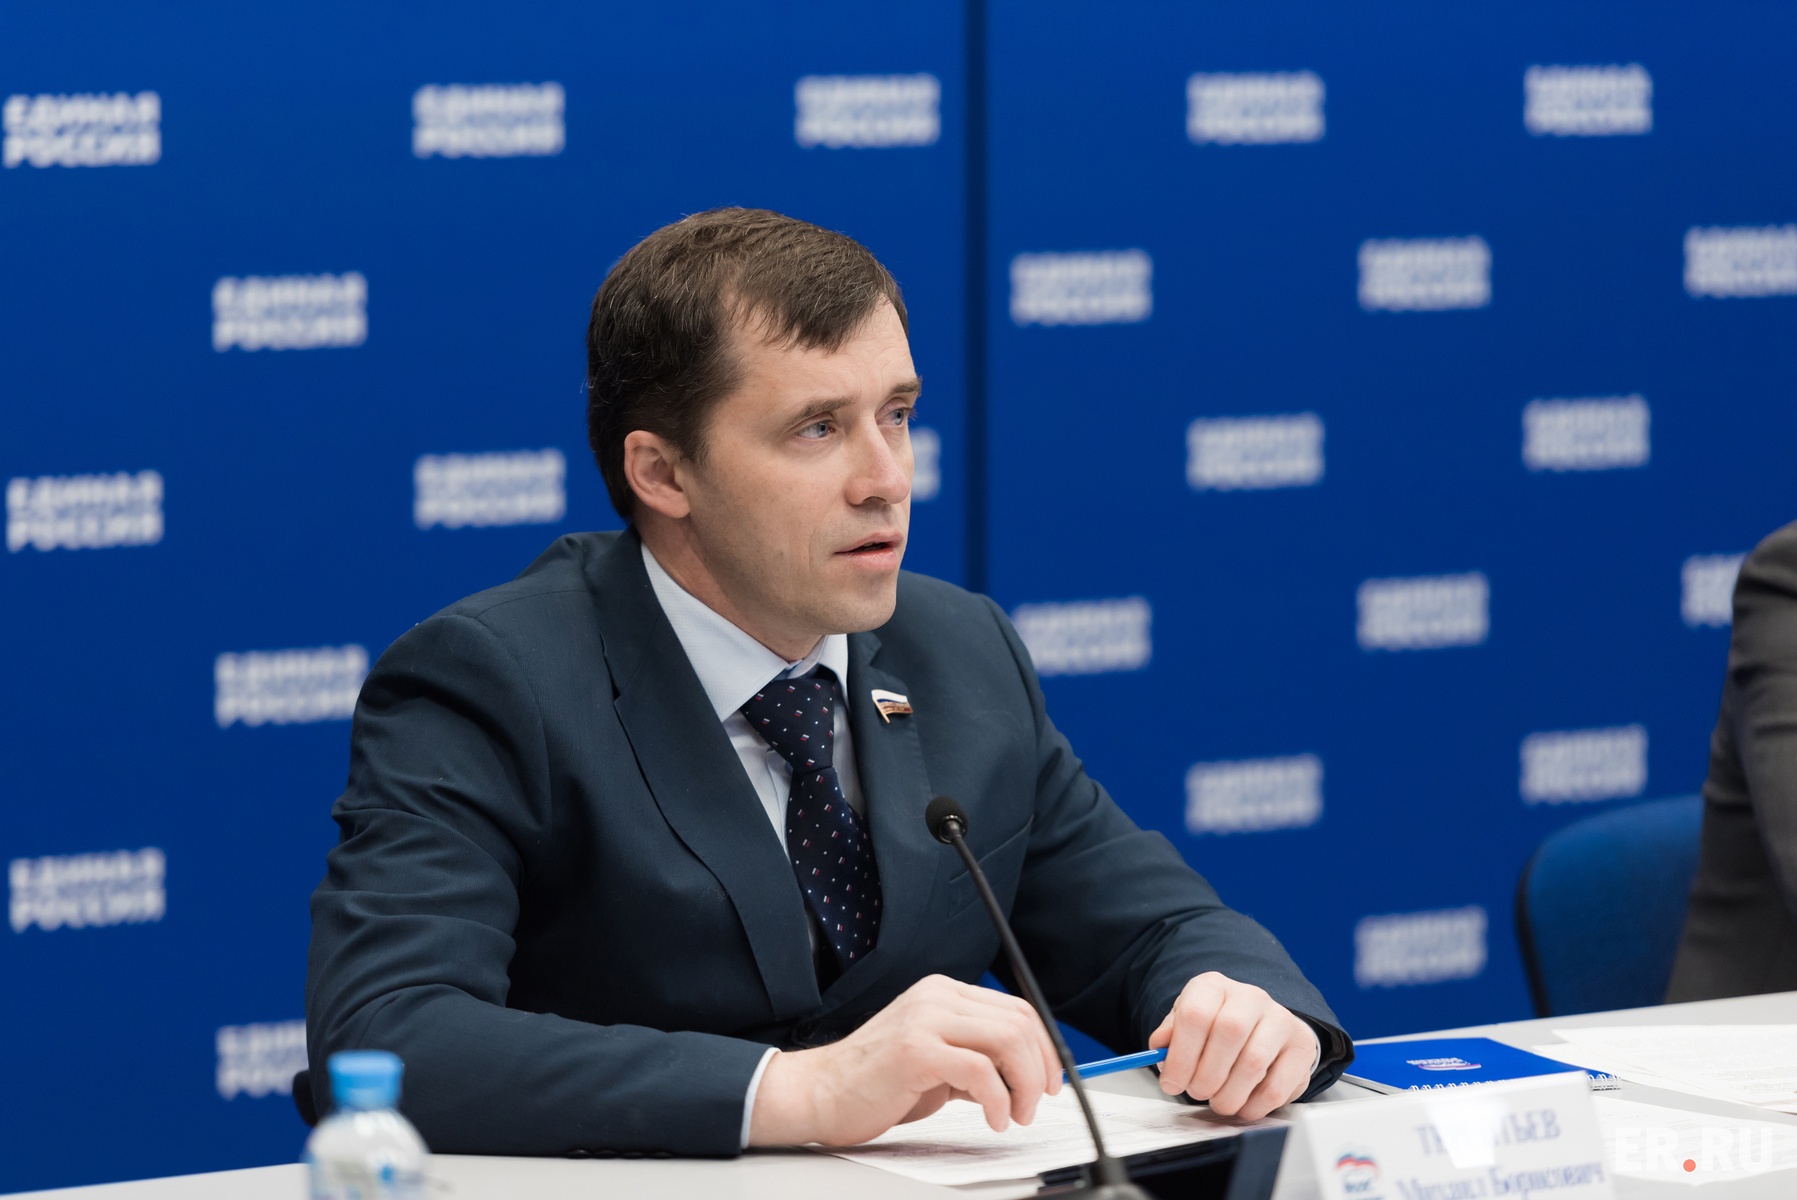 Терентьев заместитель председателя комитета Госдумы. 2015 года вступил в